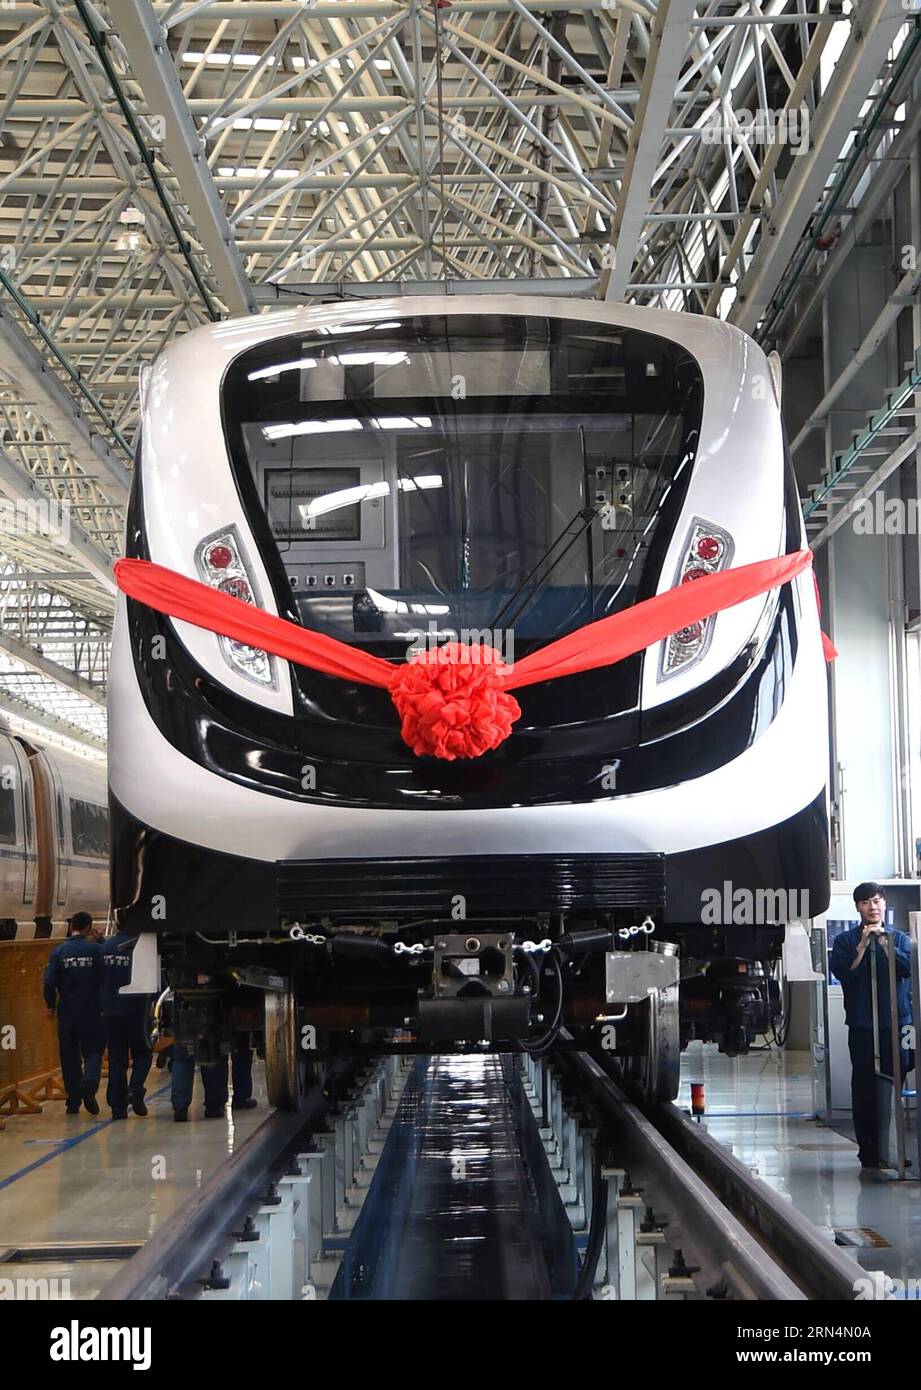 (150525) -- CHANGCHUN, 25. Mai 2015 -- die letzte U-Bahn, die für die Olympischen Spiele 2016 in Rio de Janeiro entworfen wurde, wird in Changchun Railway Vehicles Co. Ltd. Der China CNR Corporation Ltd. In Changchun, der Hauptstadt der nordöstlichen chinesischen Provinz Jilin, am 25. Mai 2015 gesehen. Der letzte U-Bahn-Zug für die Olympischen Spiele 2016 in Rio de Janeiro rollte am Montag hier von der Produktionslinie ab und wurde nach Brasilien geliefert. Der aus sechs Wagen bestehende U-Bahn-Zug mit einer Kapazität von 2.240 Personen kann mit einer Höchstgeschwindigkeit von 100 km/h fahren. Changchun Railway Vehicles Co. Ltd. Der China CNR Corporation Stockfoto